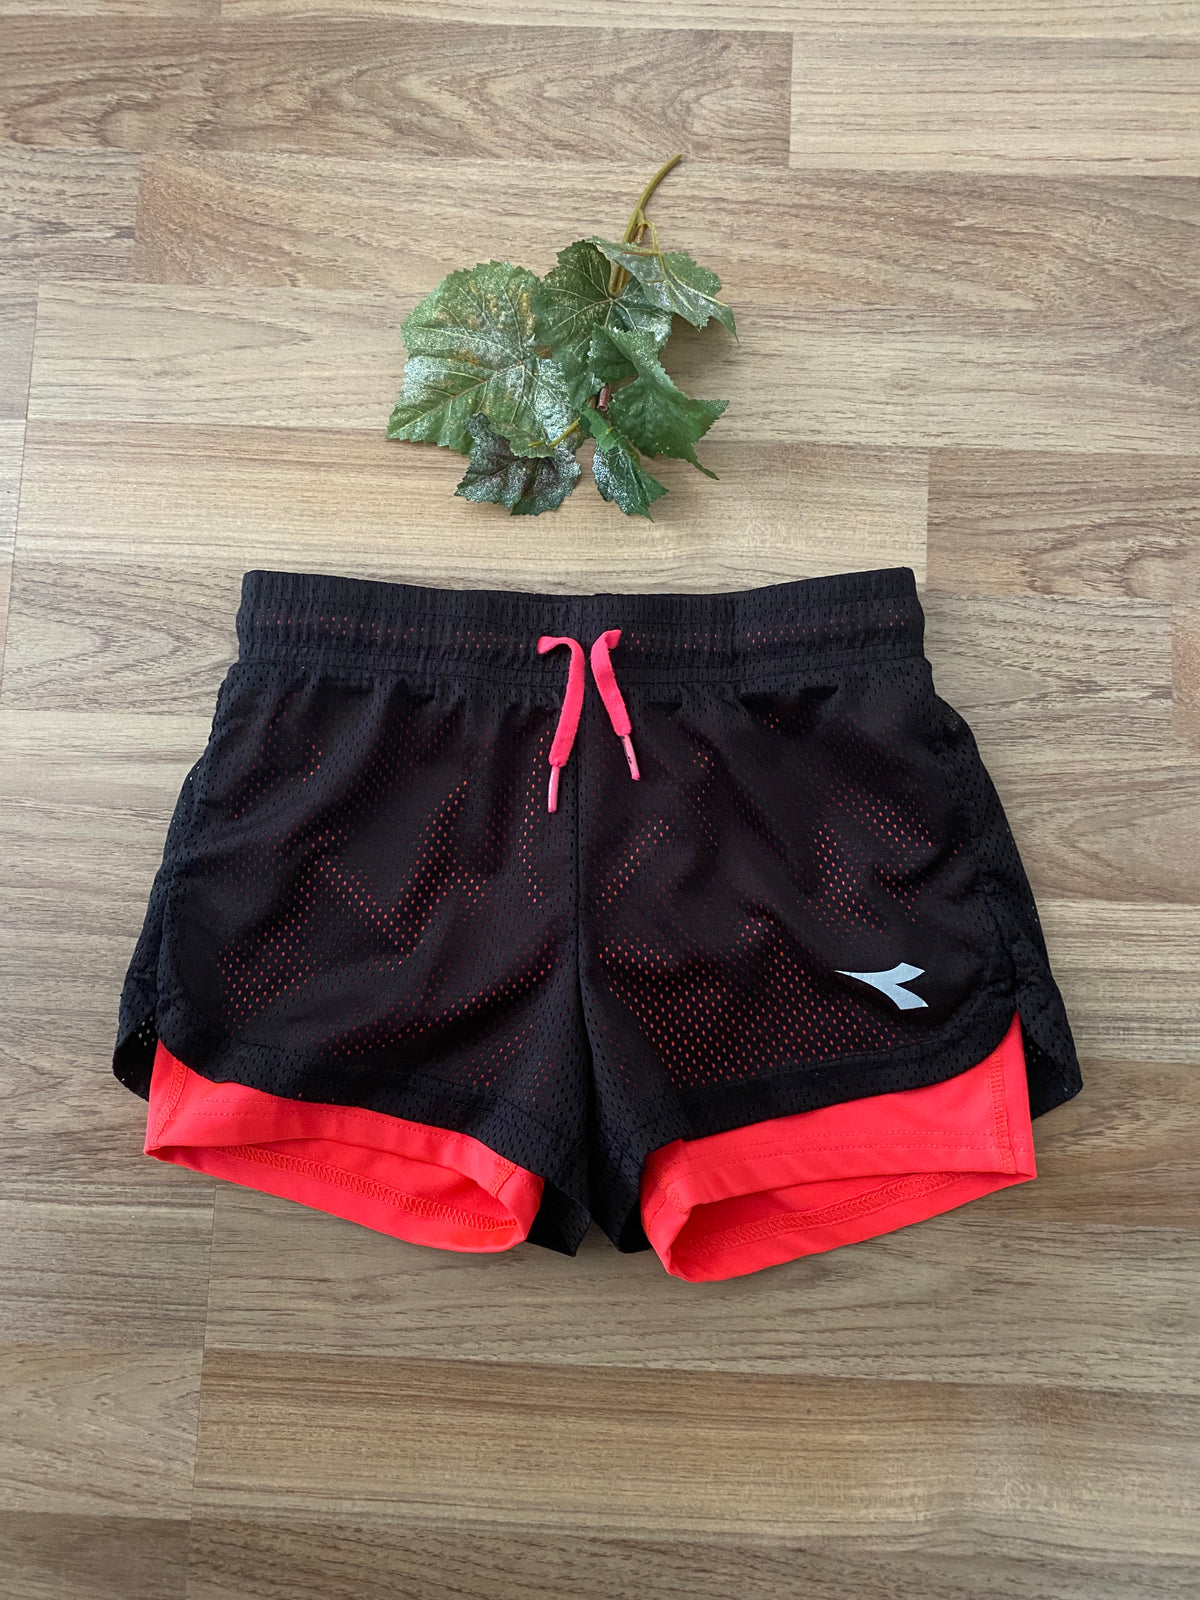 Shorts (Girls Size 6)